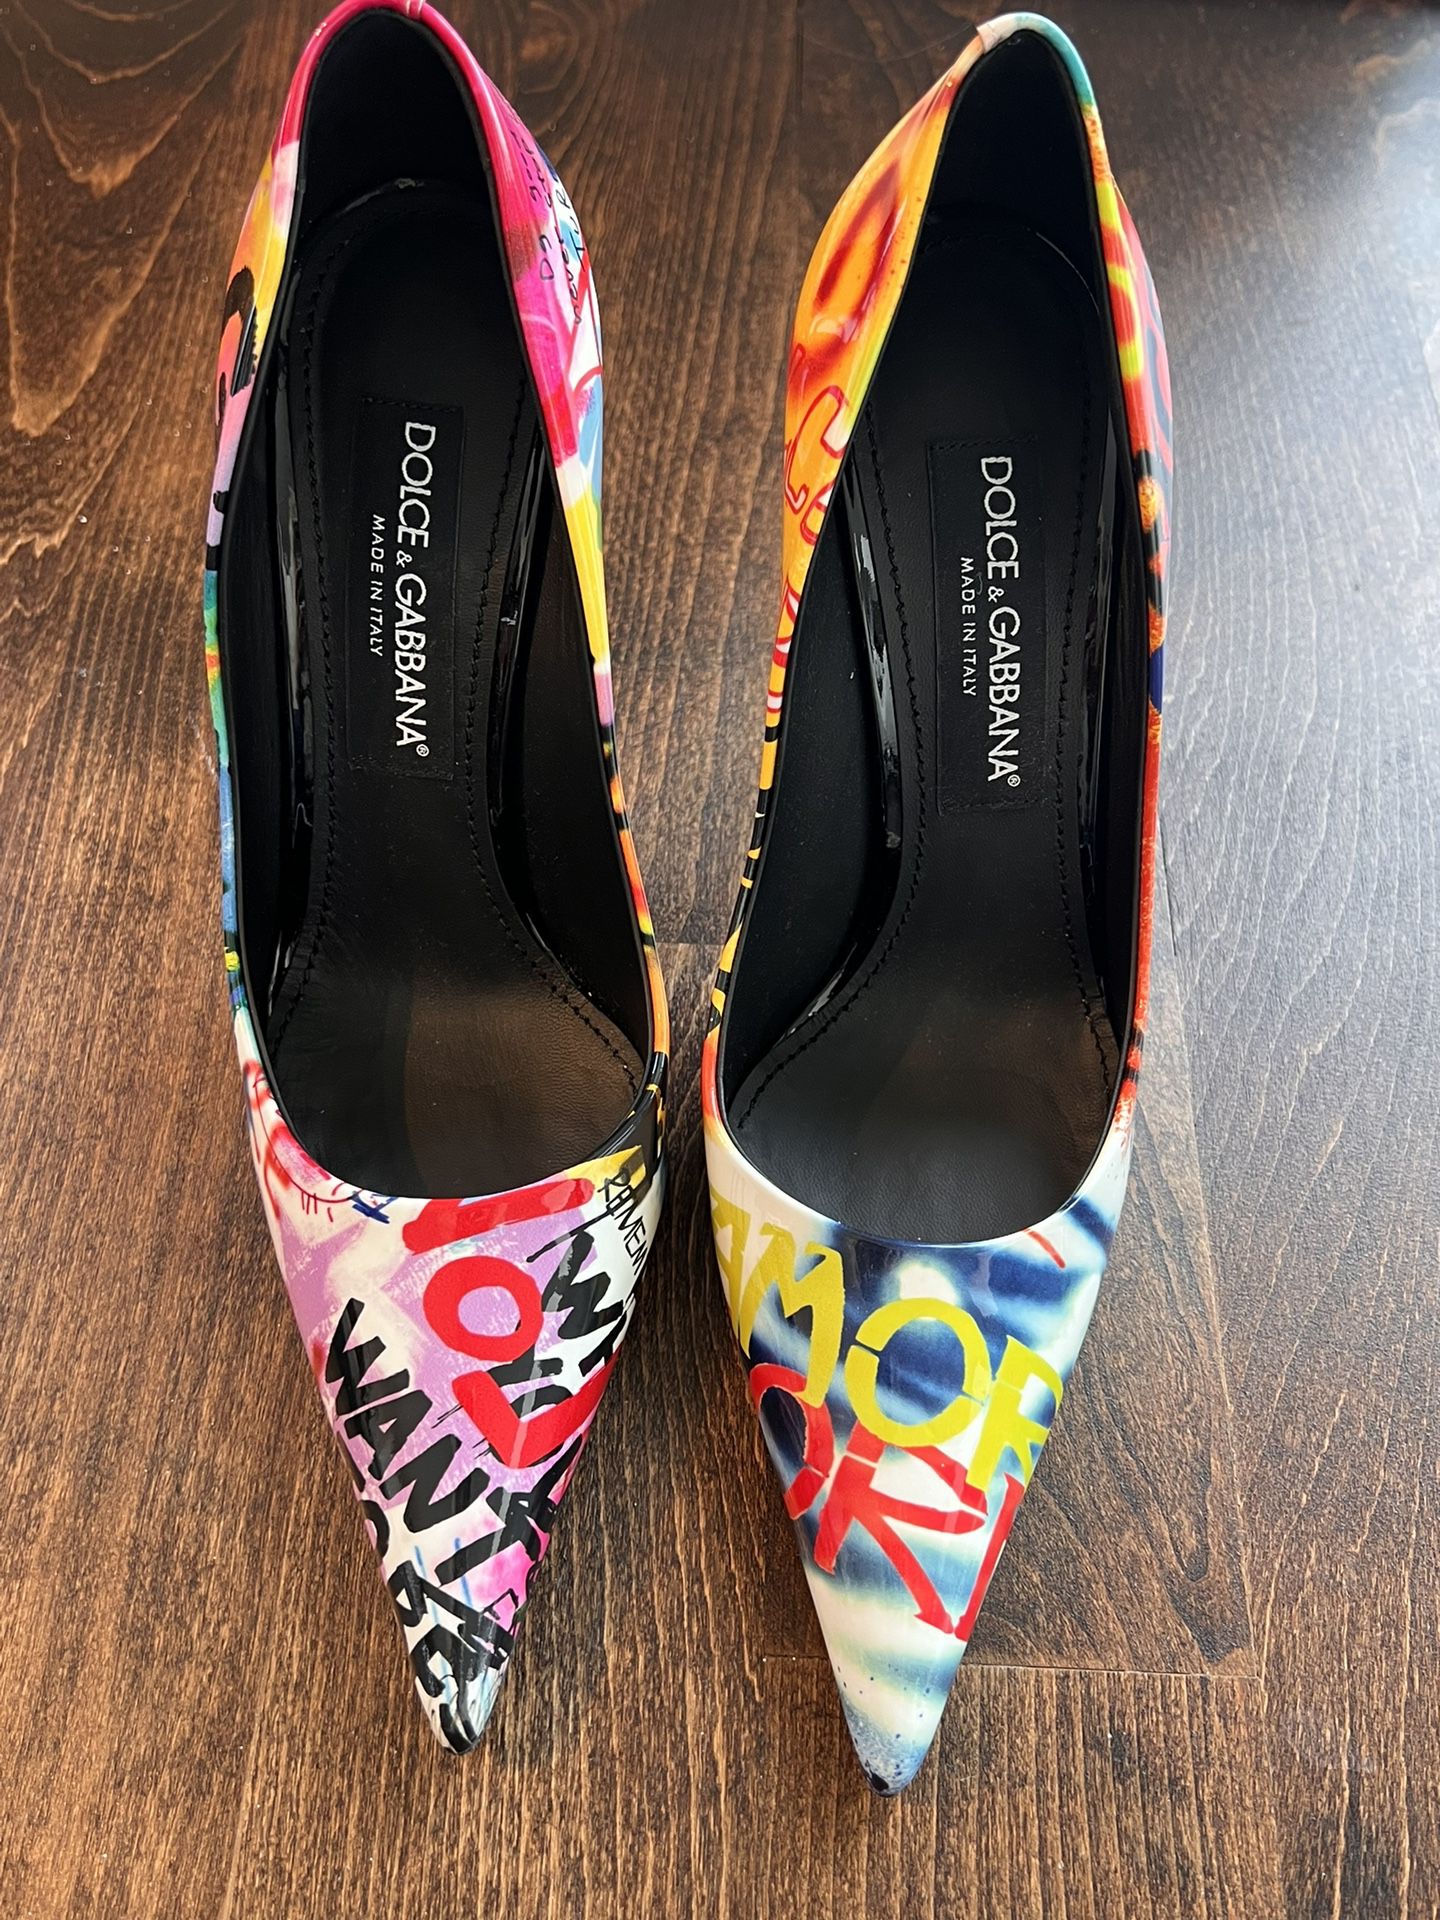 Dolce & Gabbana Graffiti Patent Leather Heels 